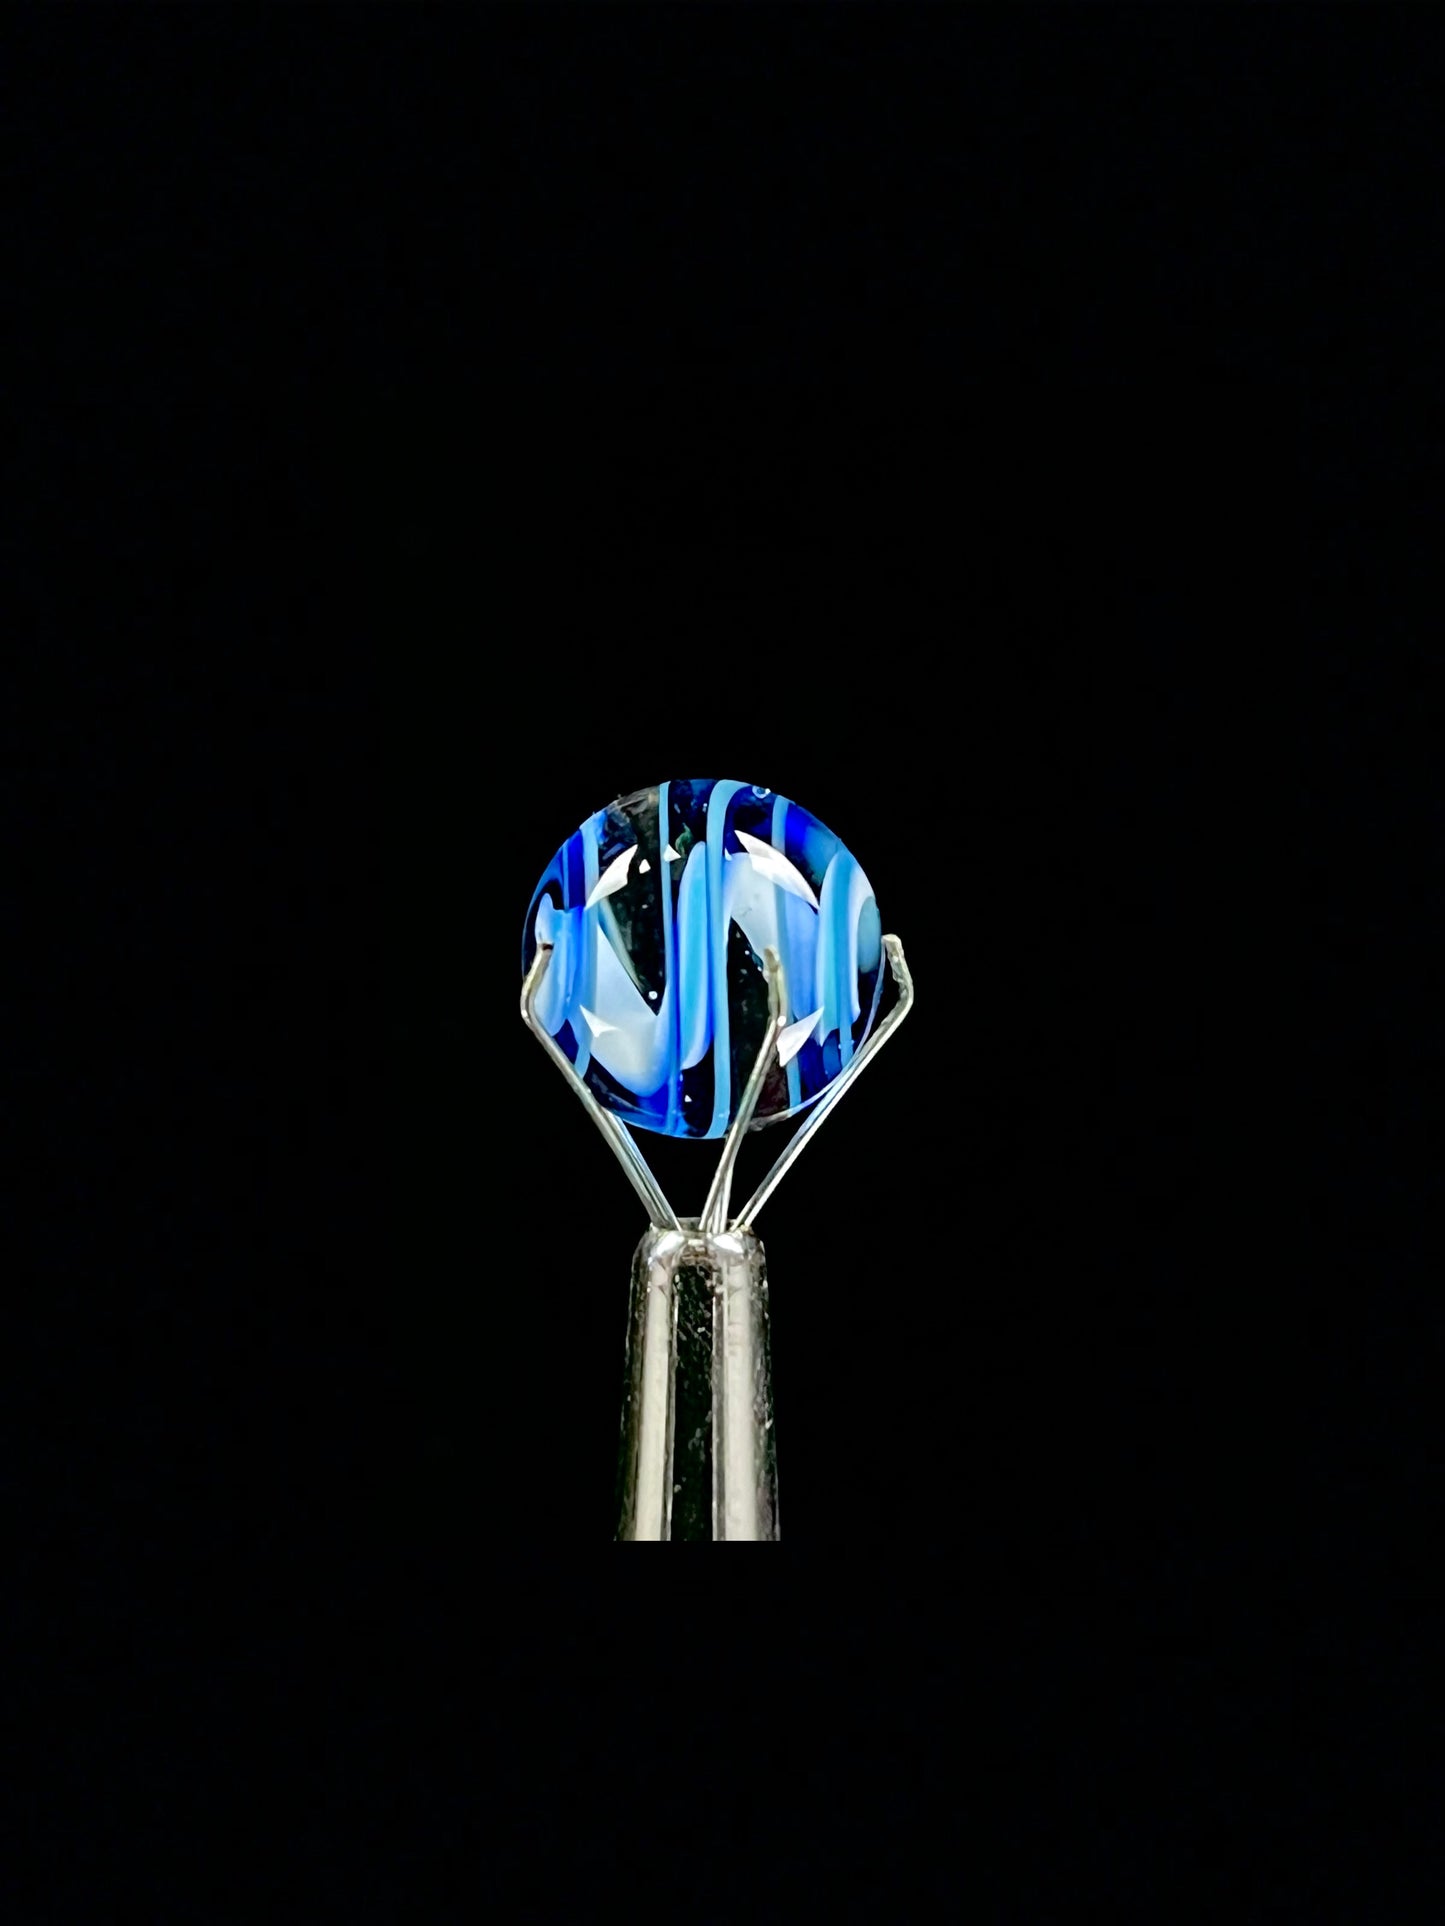 Blue spiral 4 piece slurper set by Phase Glass